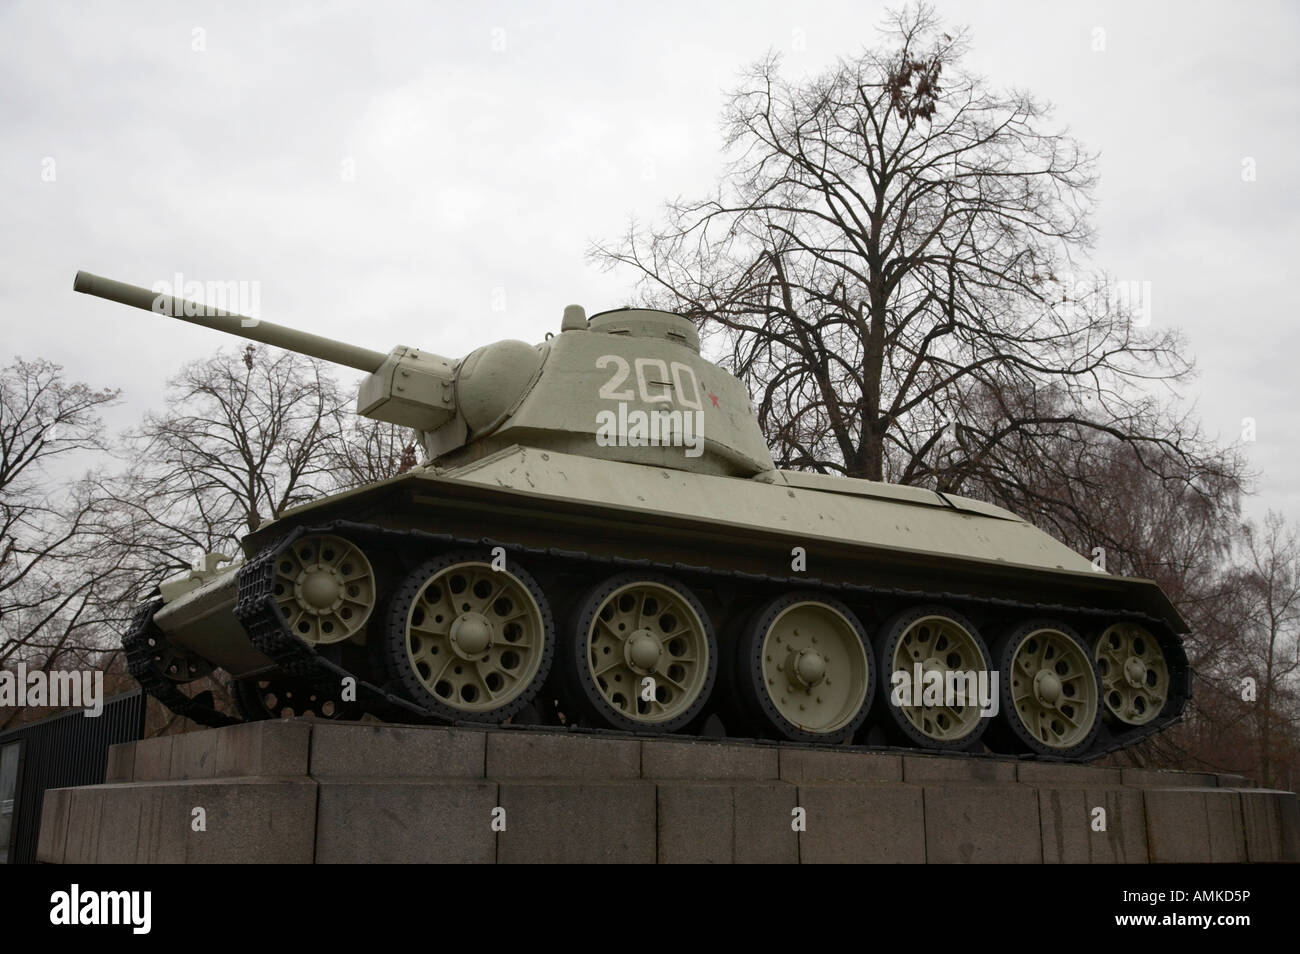 T 34 tank sur socle au monument commémoratif de guerre soviétique Tiergarten Berlin Allemagne Banque D'Images